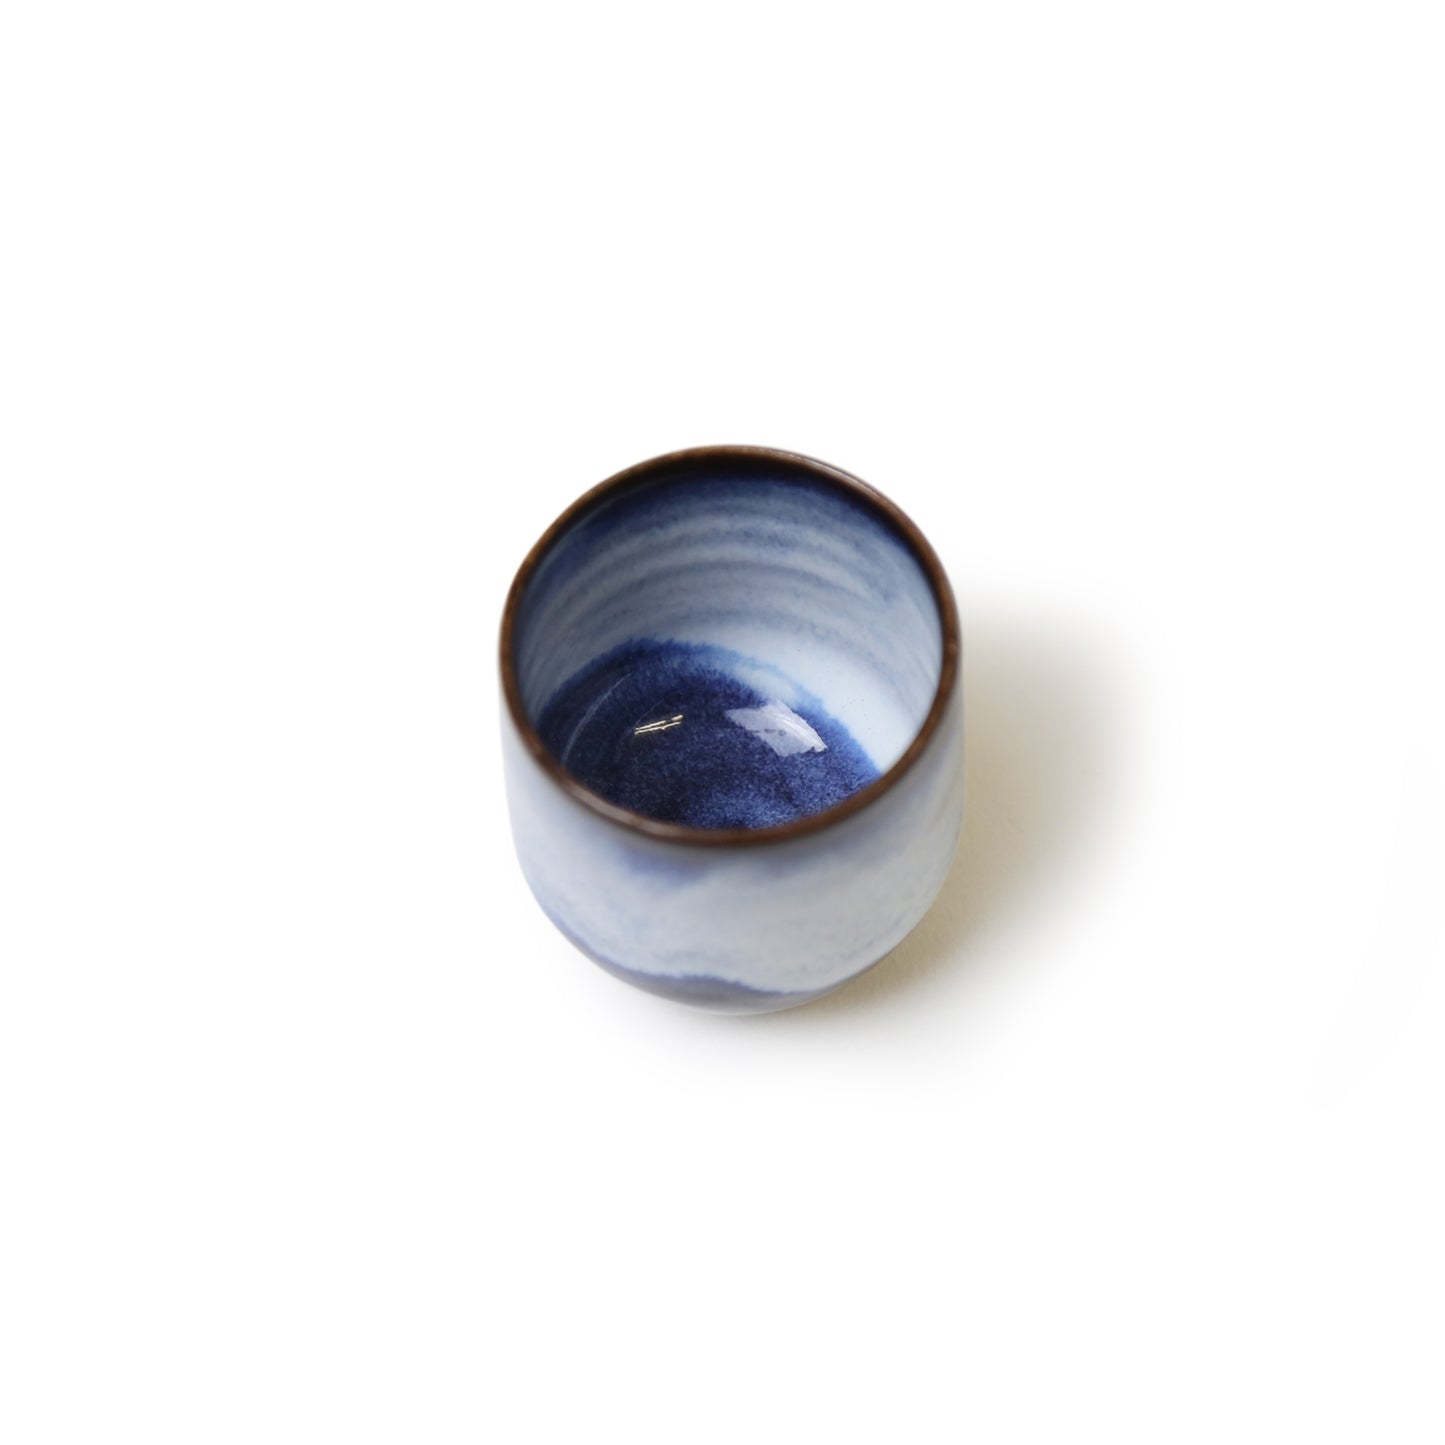 Shokozan Japanese ceramics Hagi